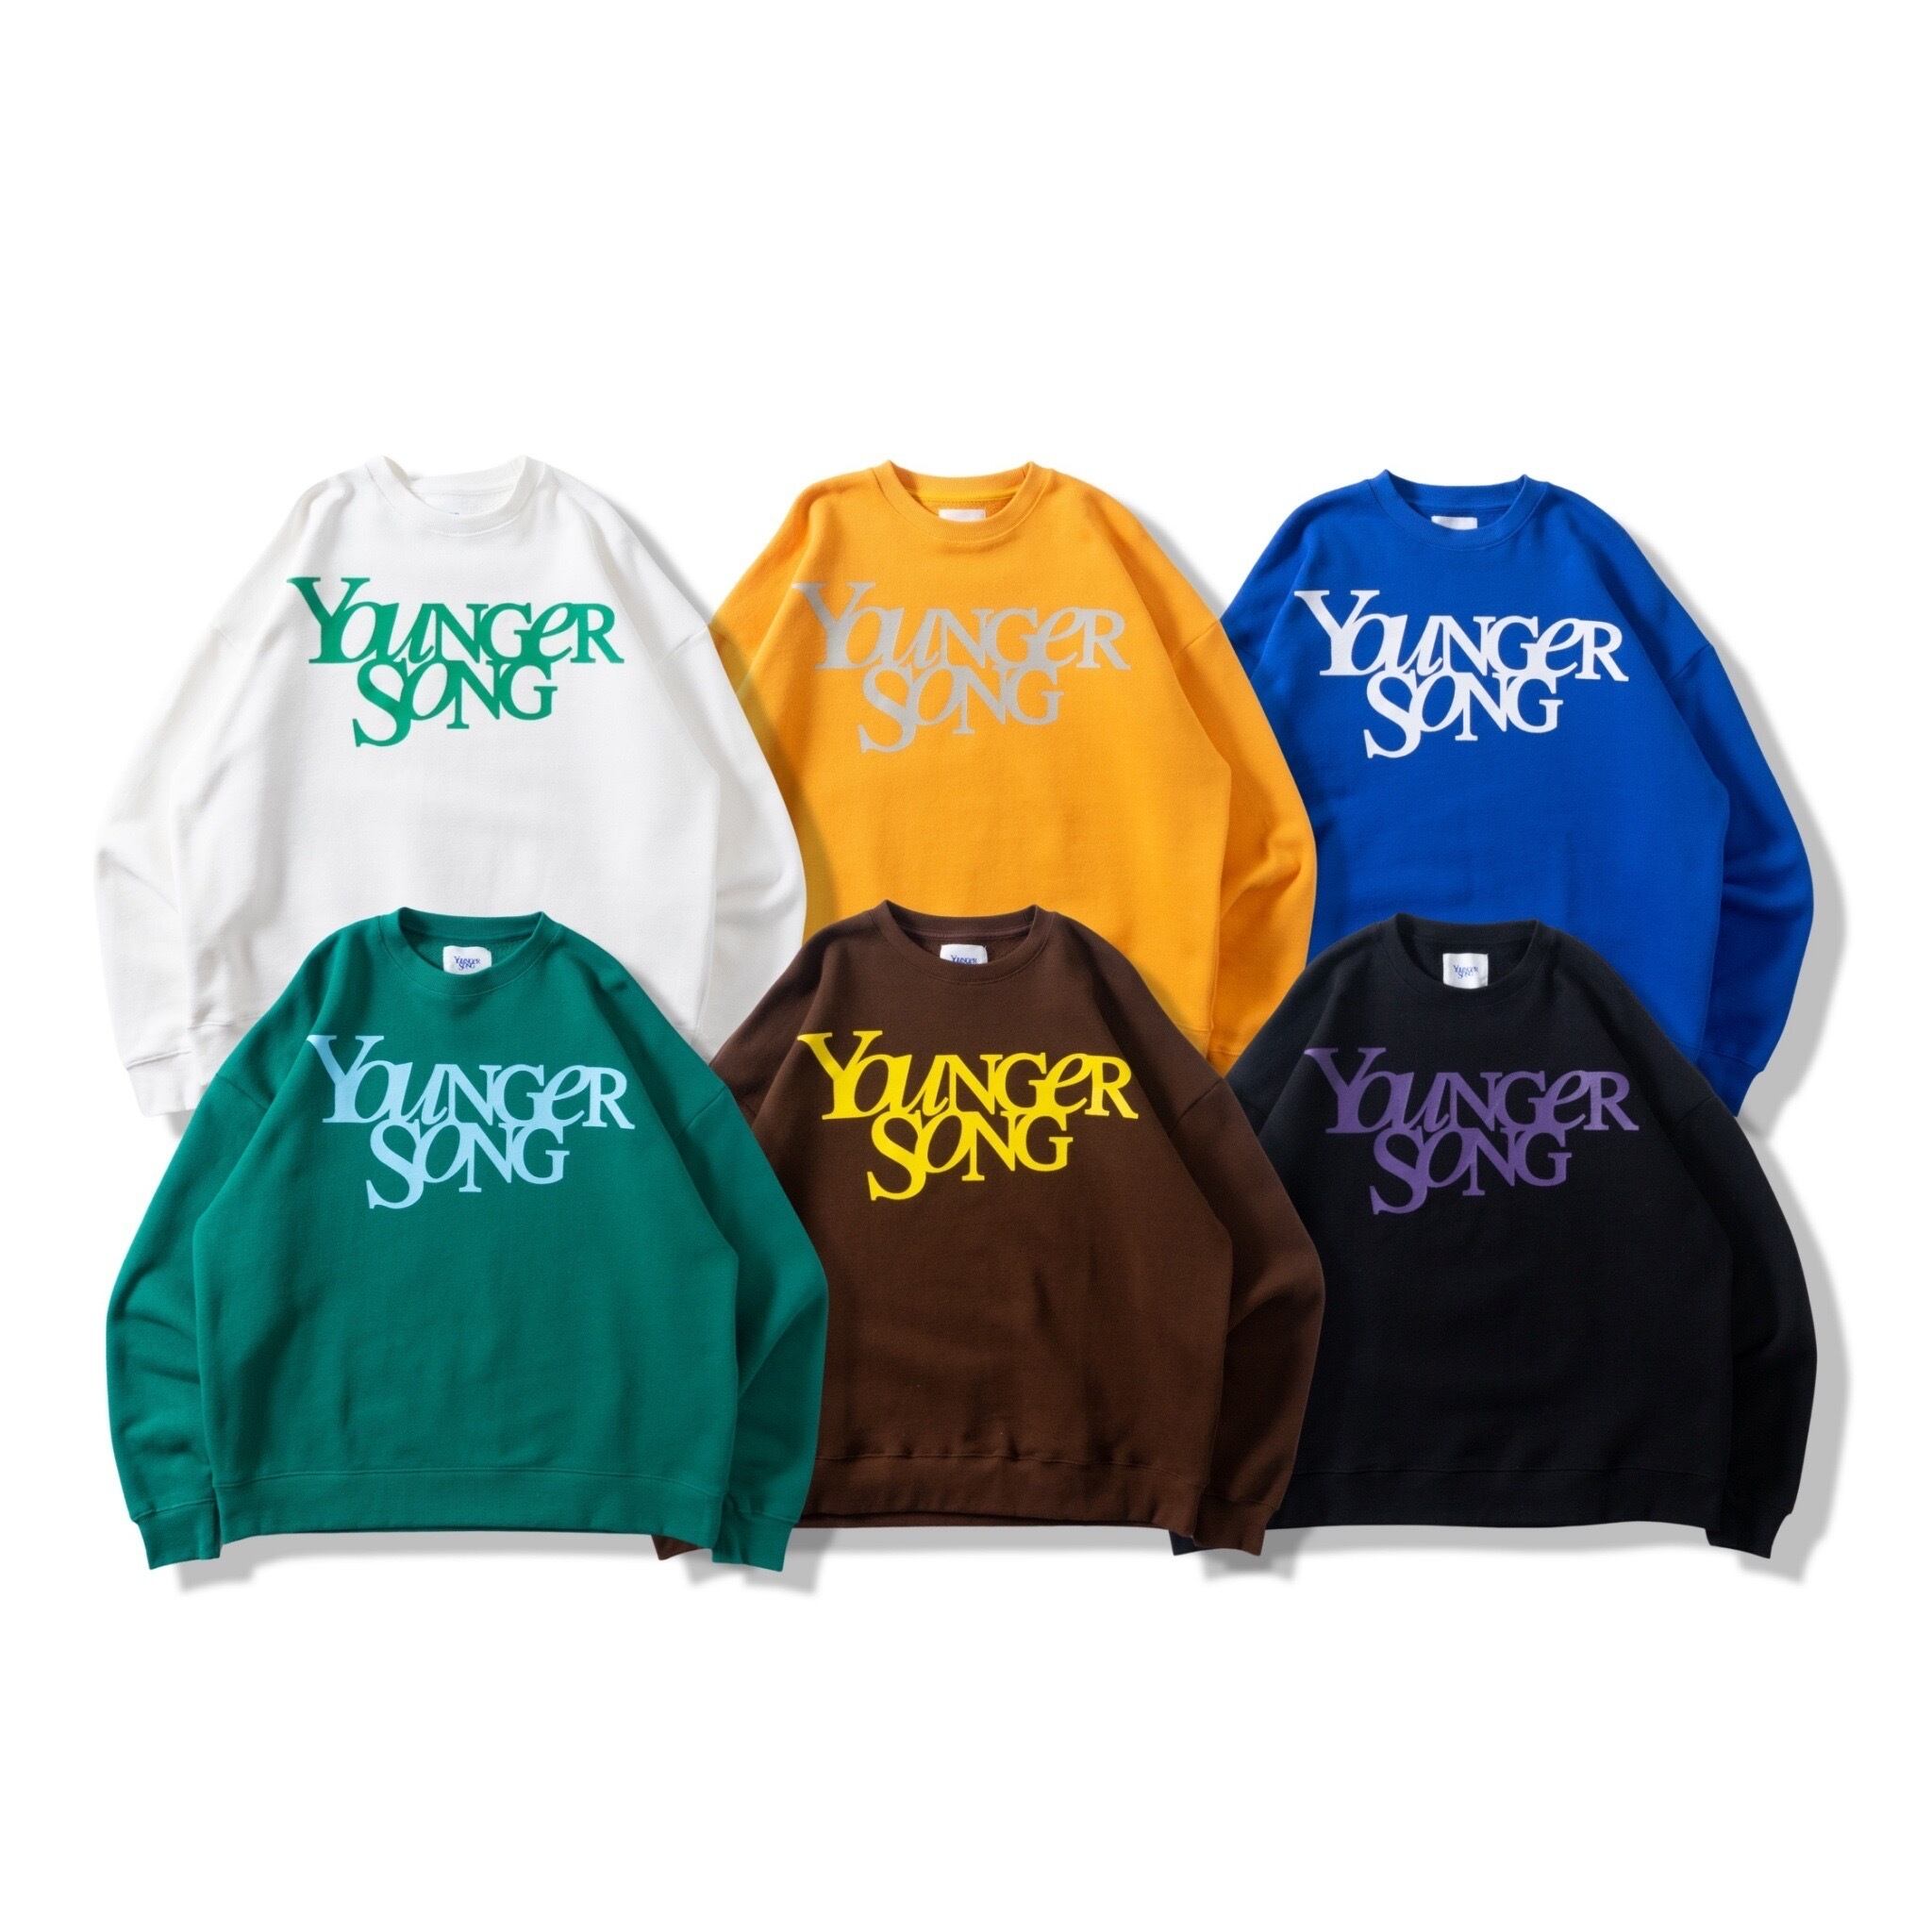 クリアランスsale!期間限定! Younger song Universal logo hoodie